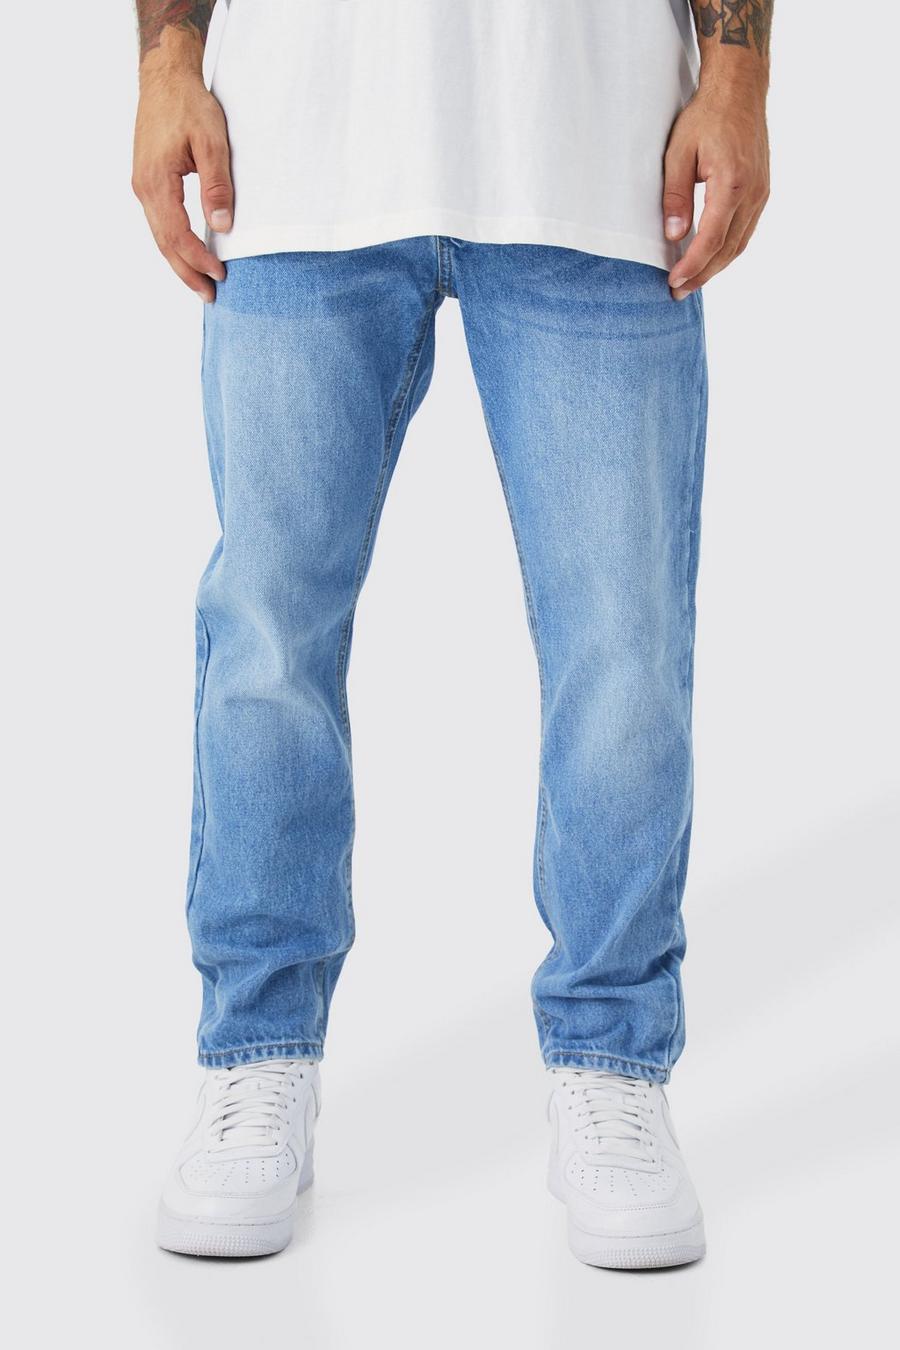 Light blue azul ג'ינס מבד קשיח בגזרת קרסול צרה